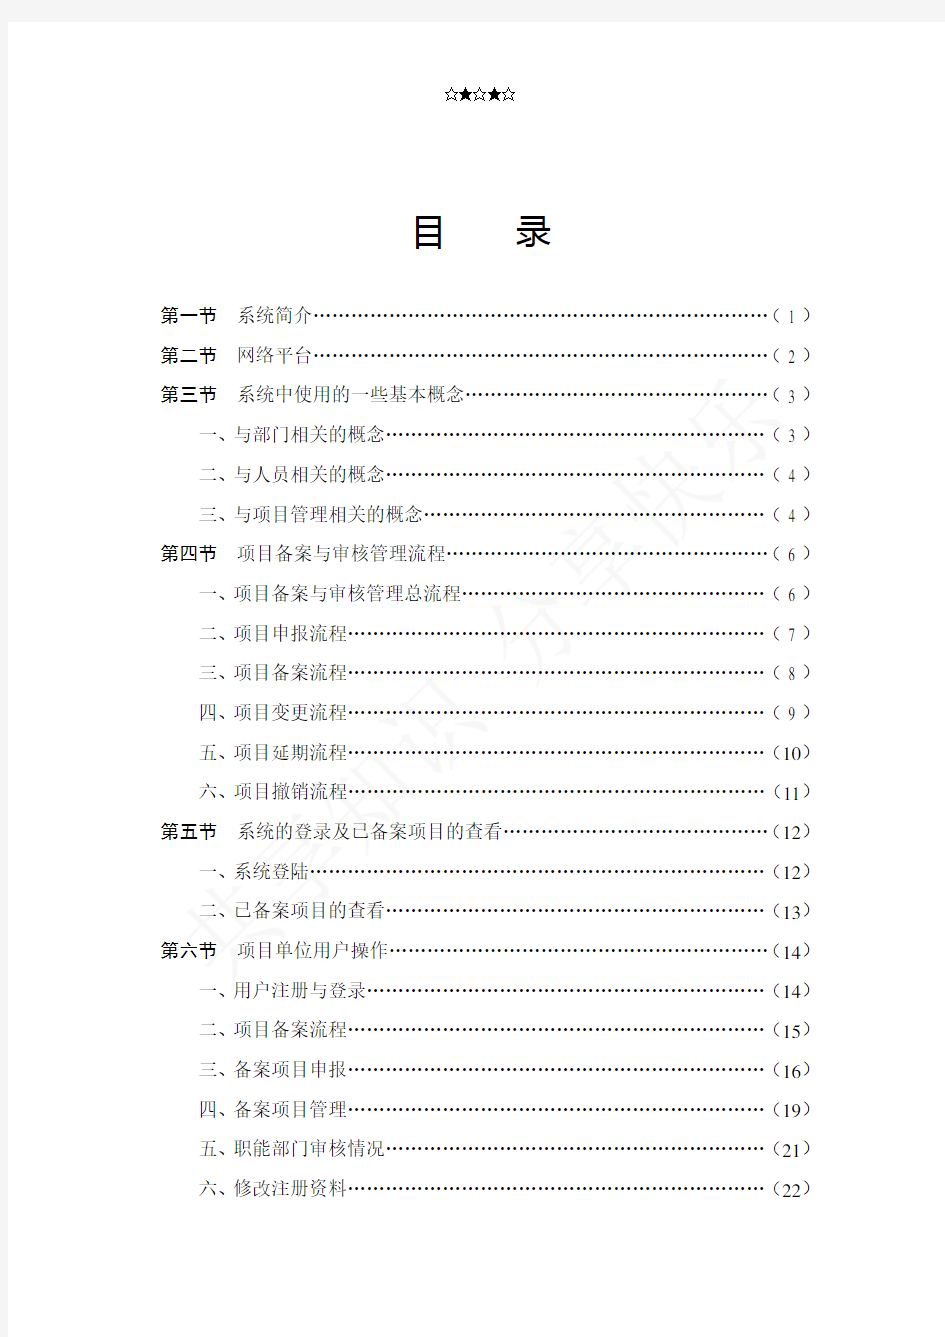 浙江省企业投资项目备案管理信息系统使用手册